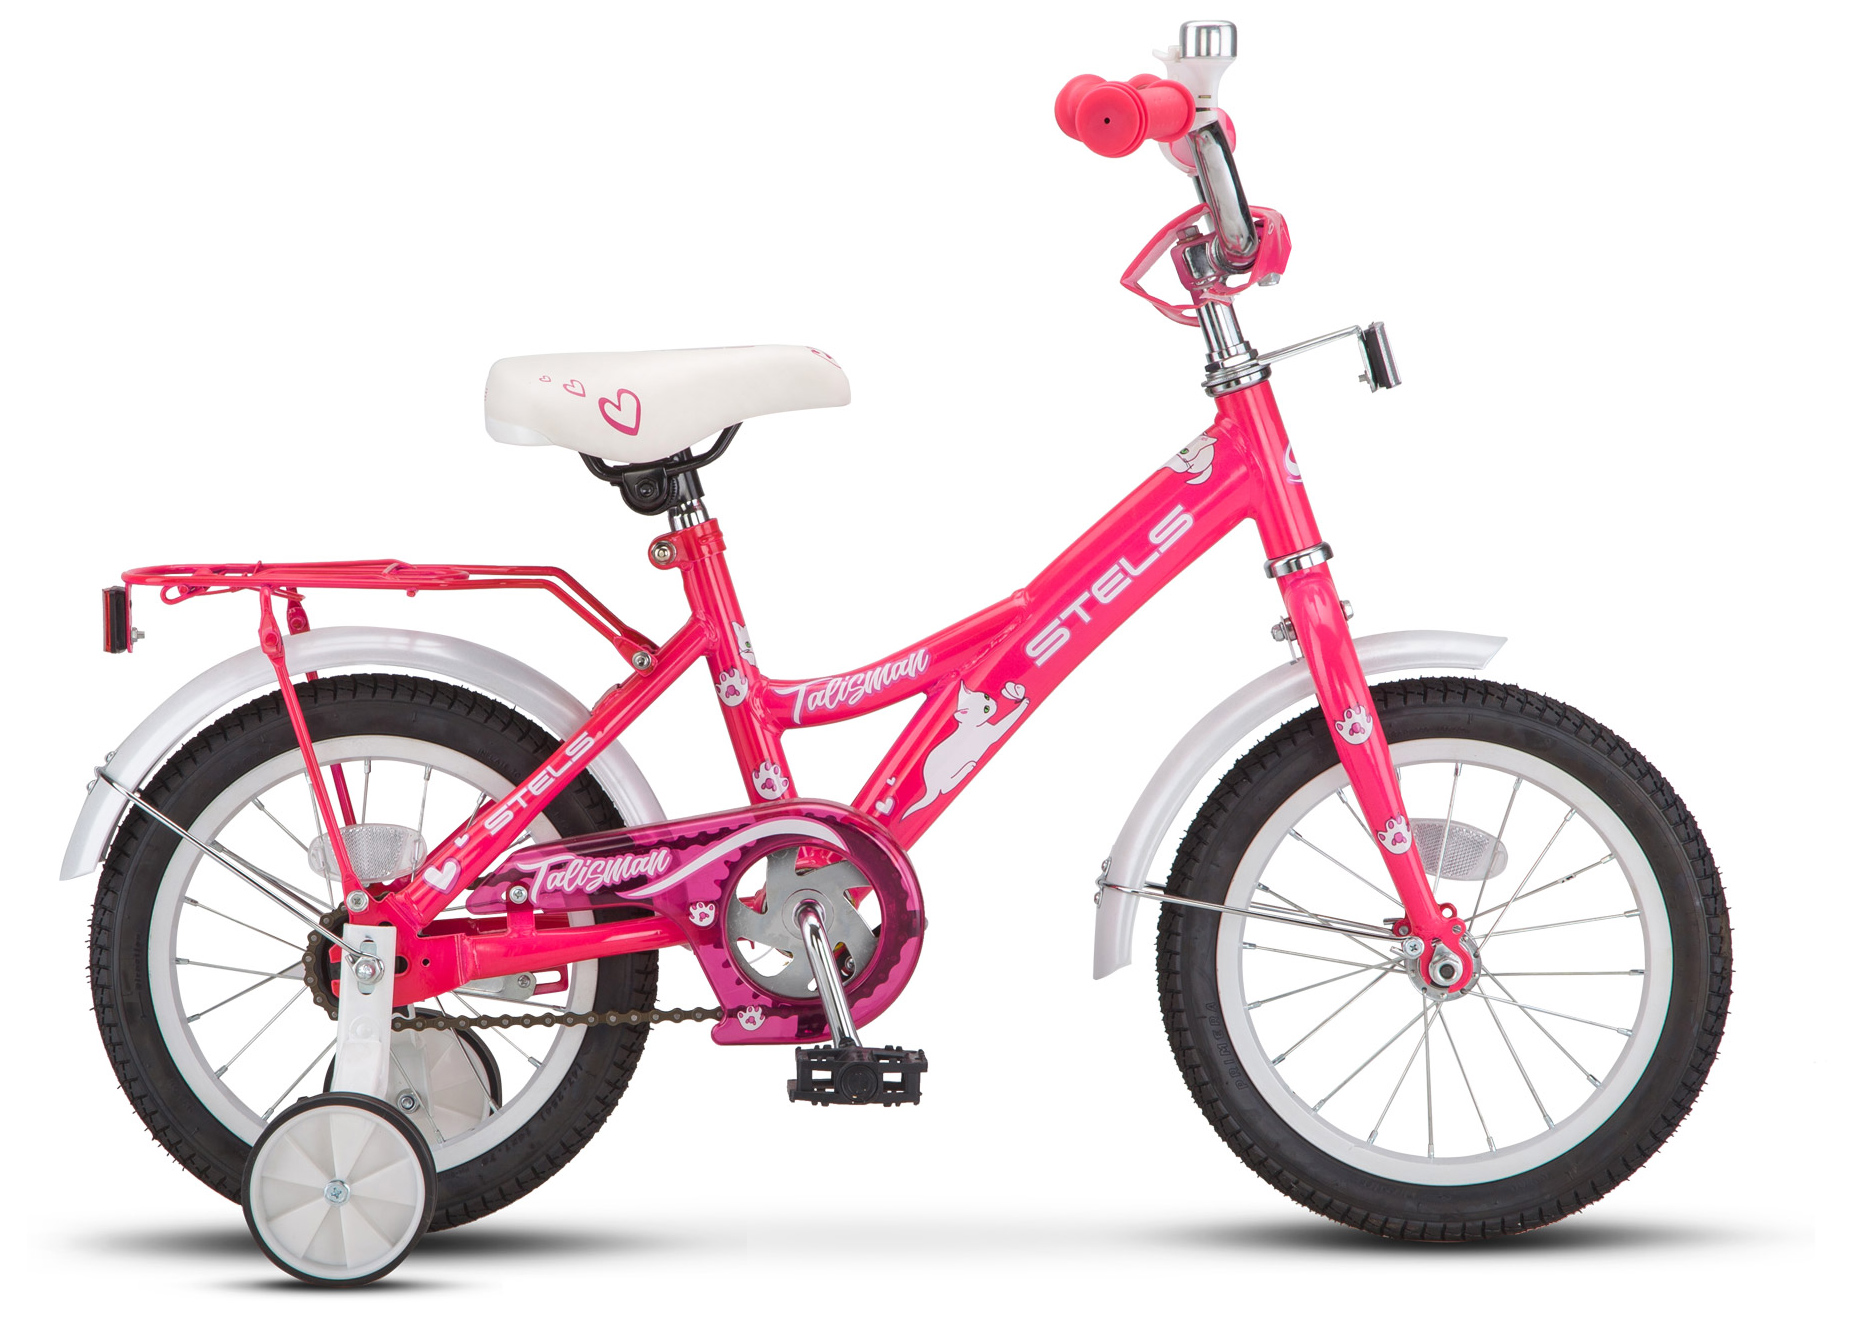  Отзывы о Трехколесный детский велосипед Stels Talisman Lady 16 (Z010) 2019